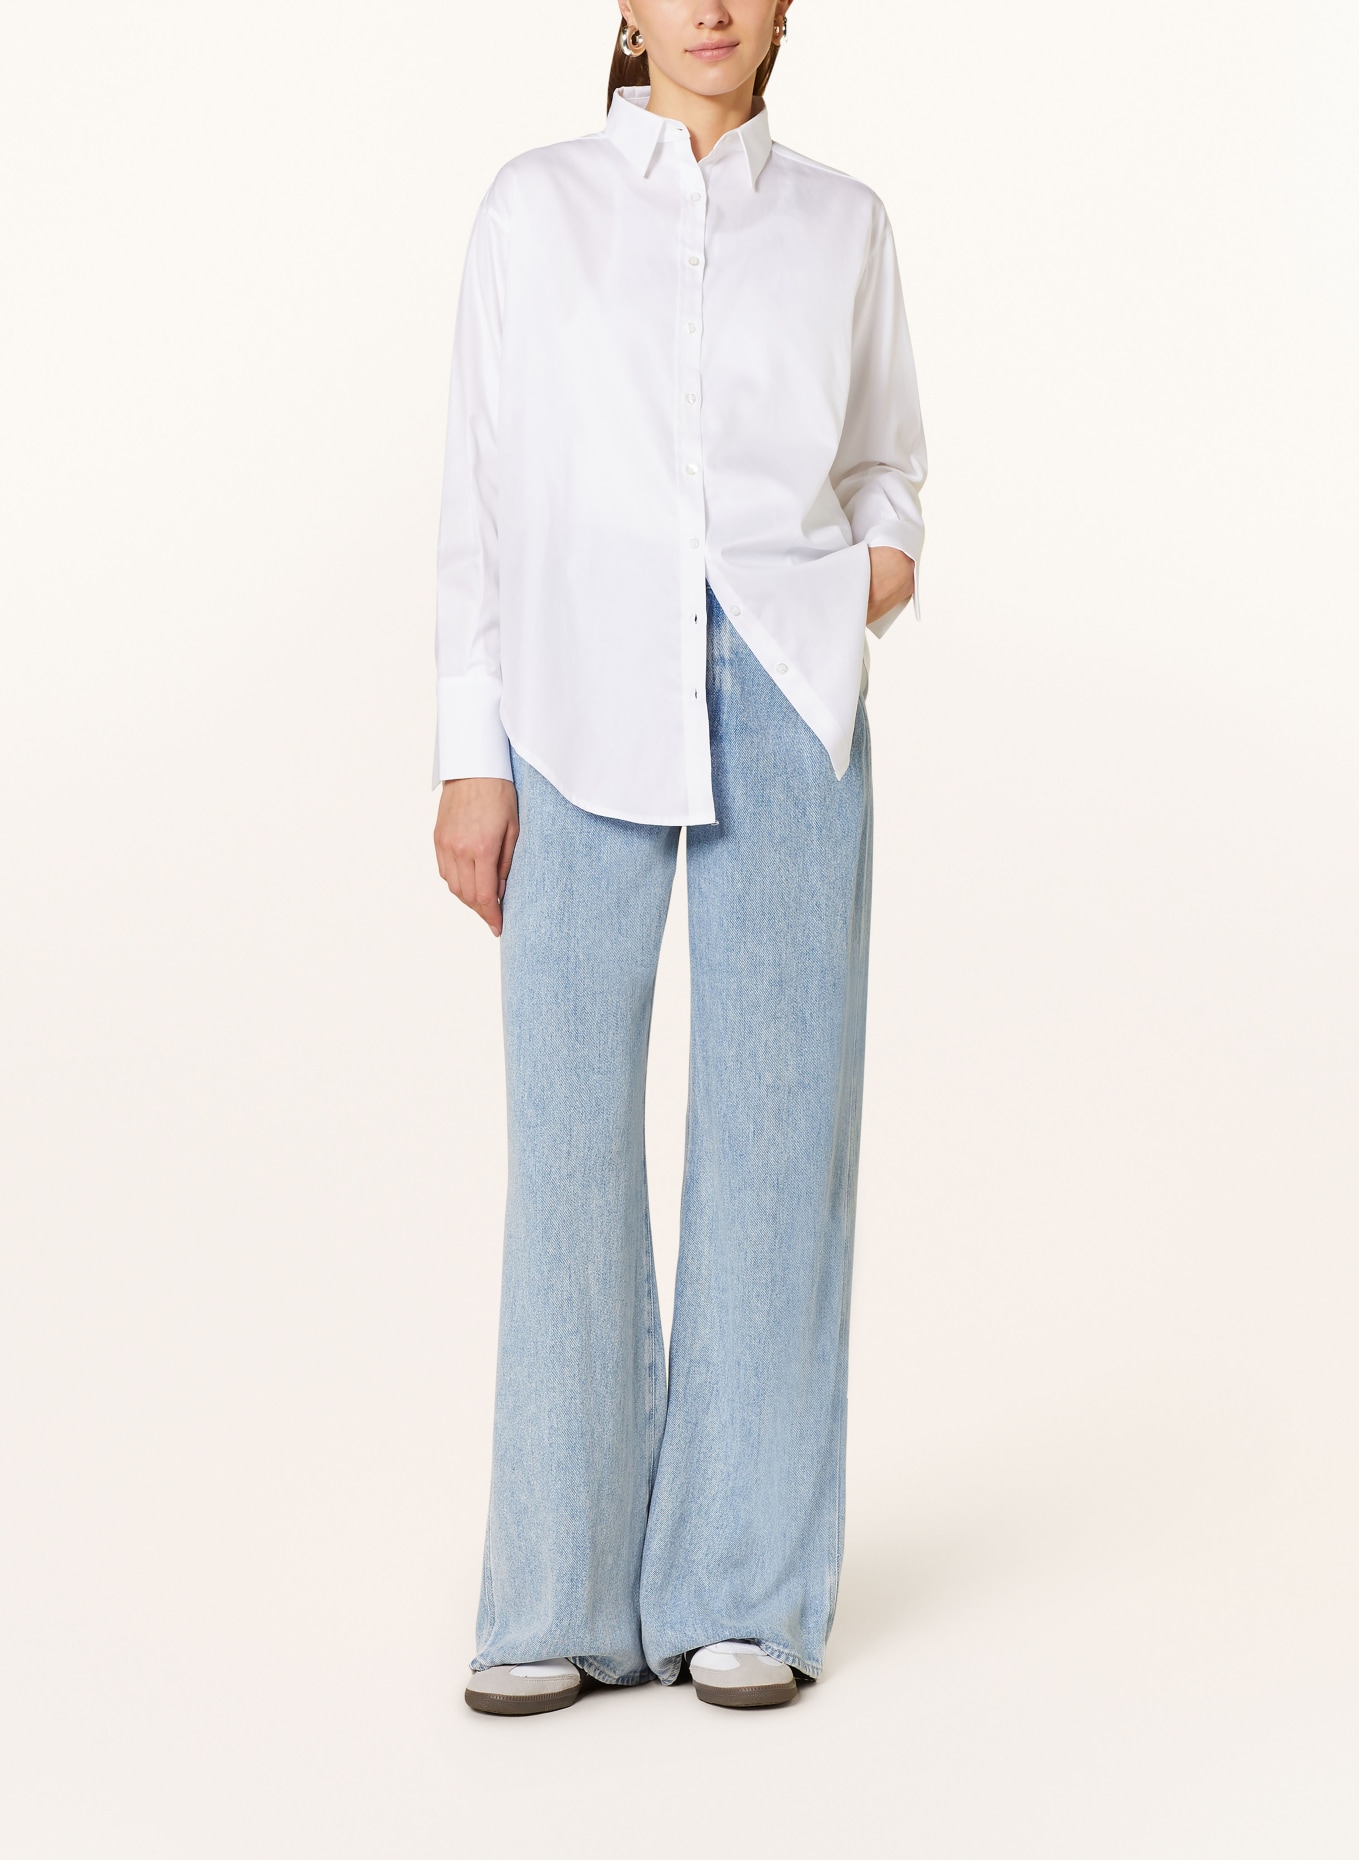 VIKTORIA LOUISE Shirt blouse THE LASTING, Color: WHITE (Image 2)